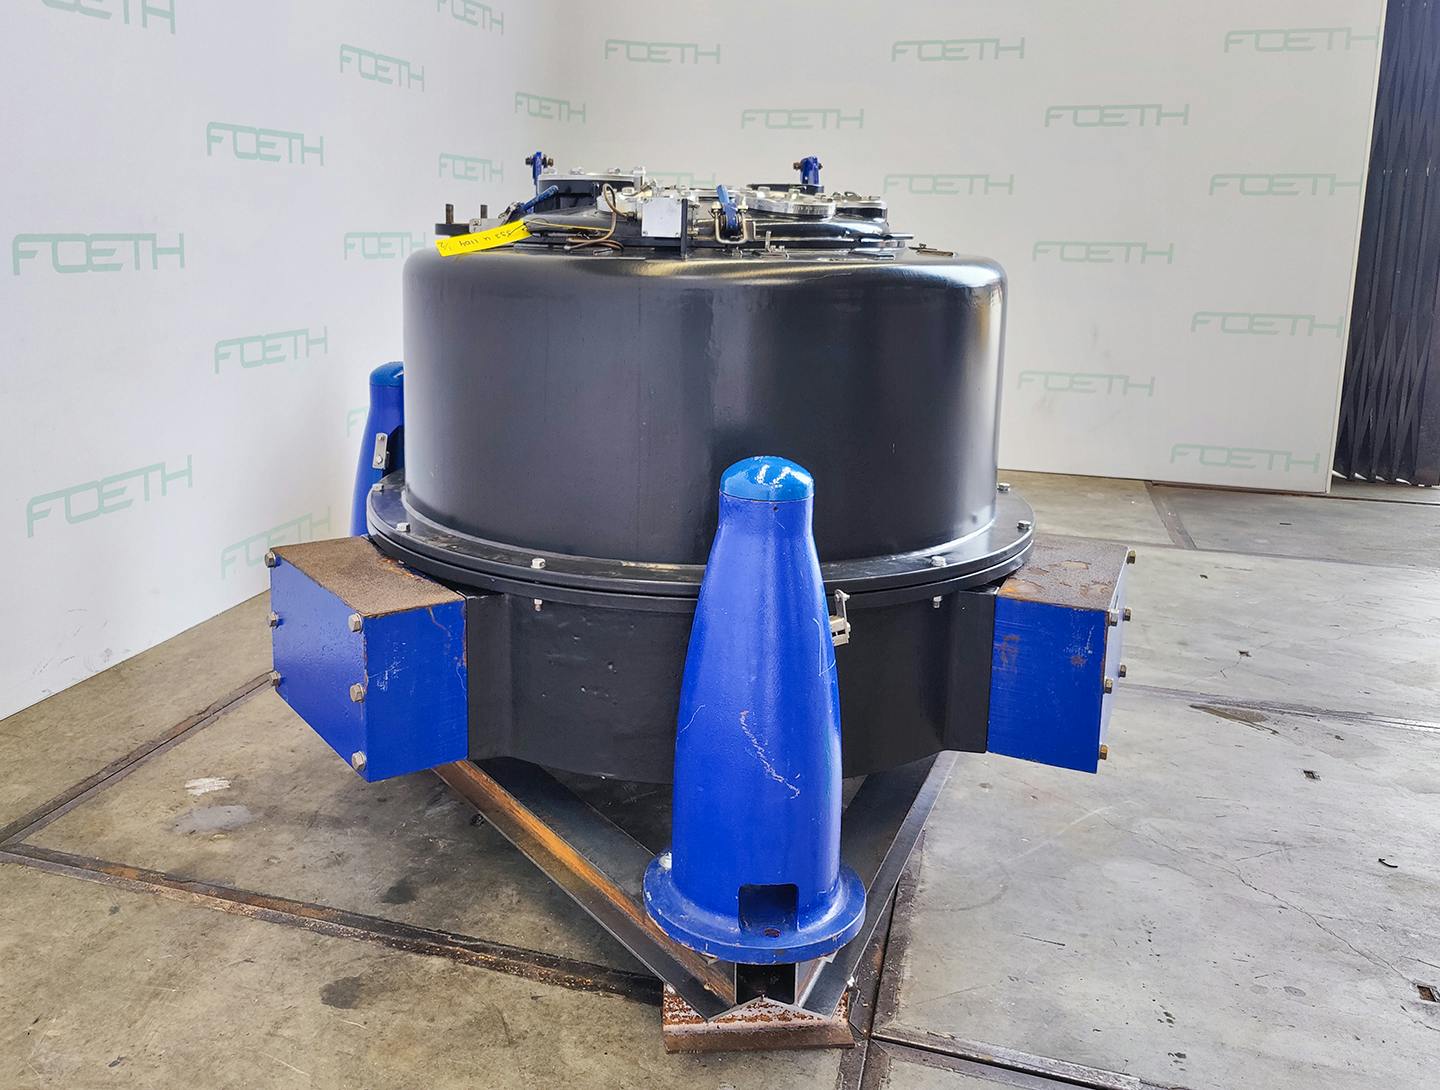 Krauss Maffei PZU 125 - Basket centrifuge - image 3